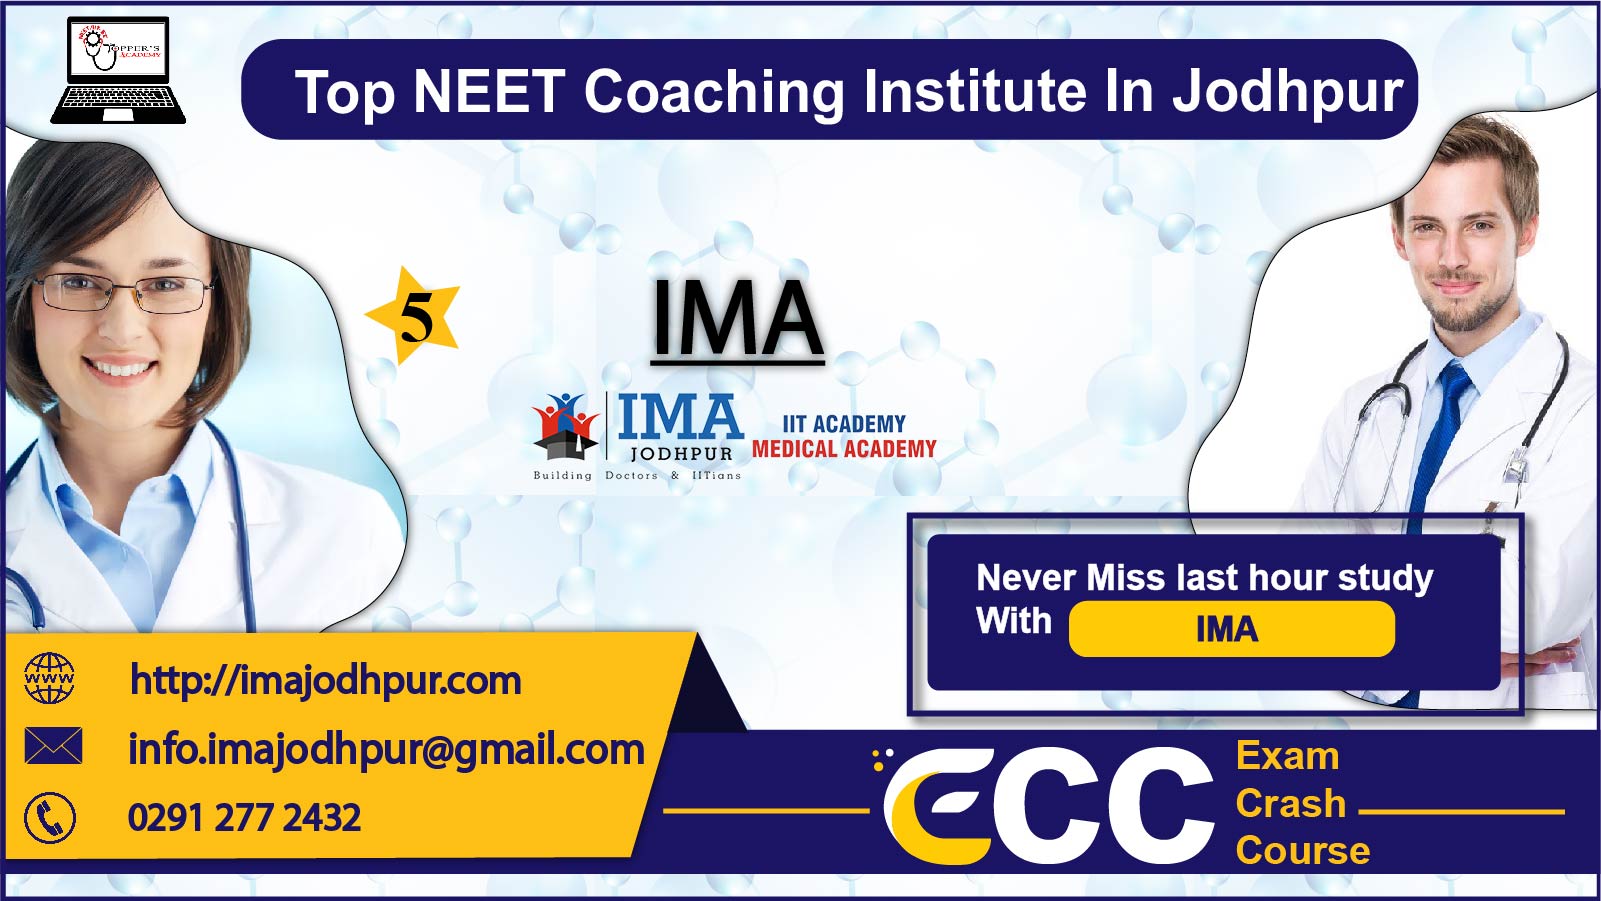 IMA NEET Academy in Jodhpur